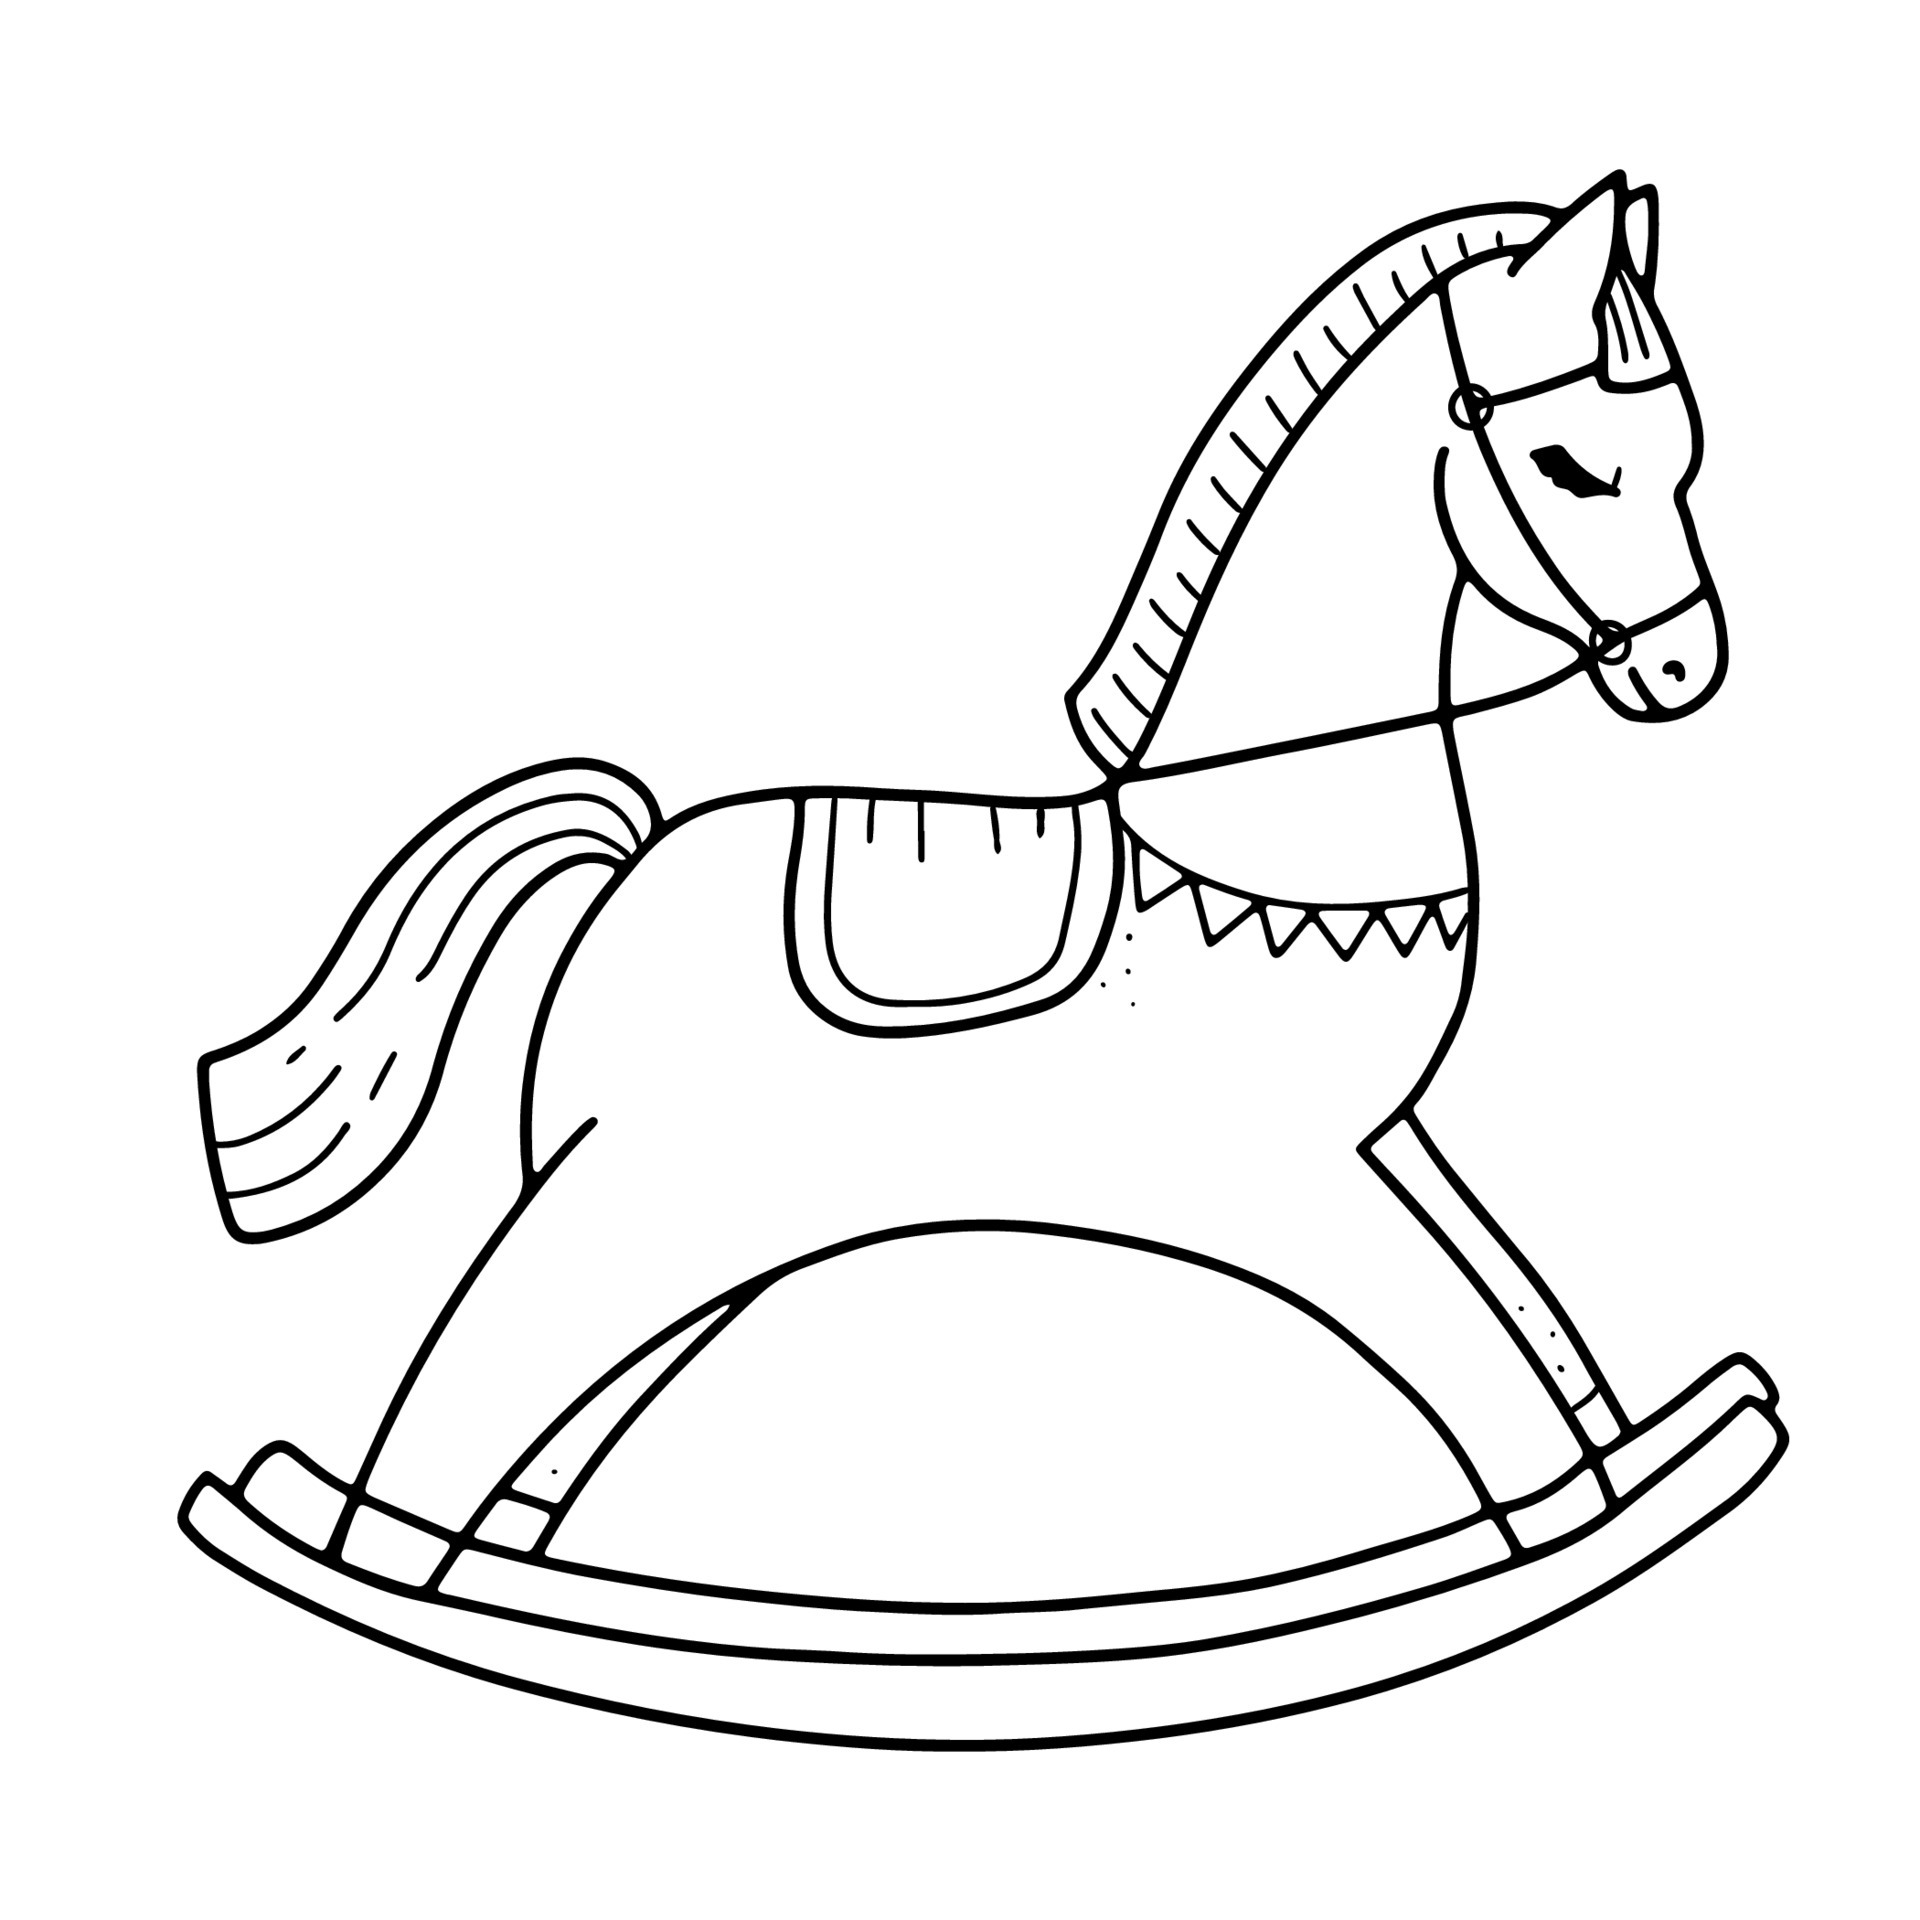 Cavalo - Desenhos para pintar - Brinquedos de Papel